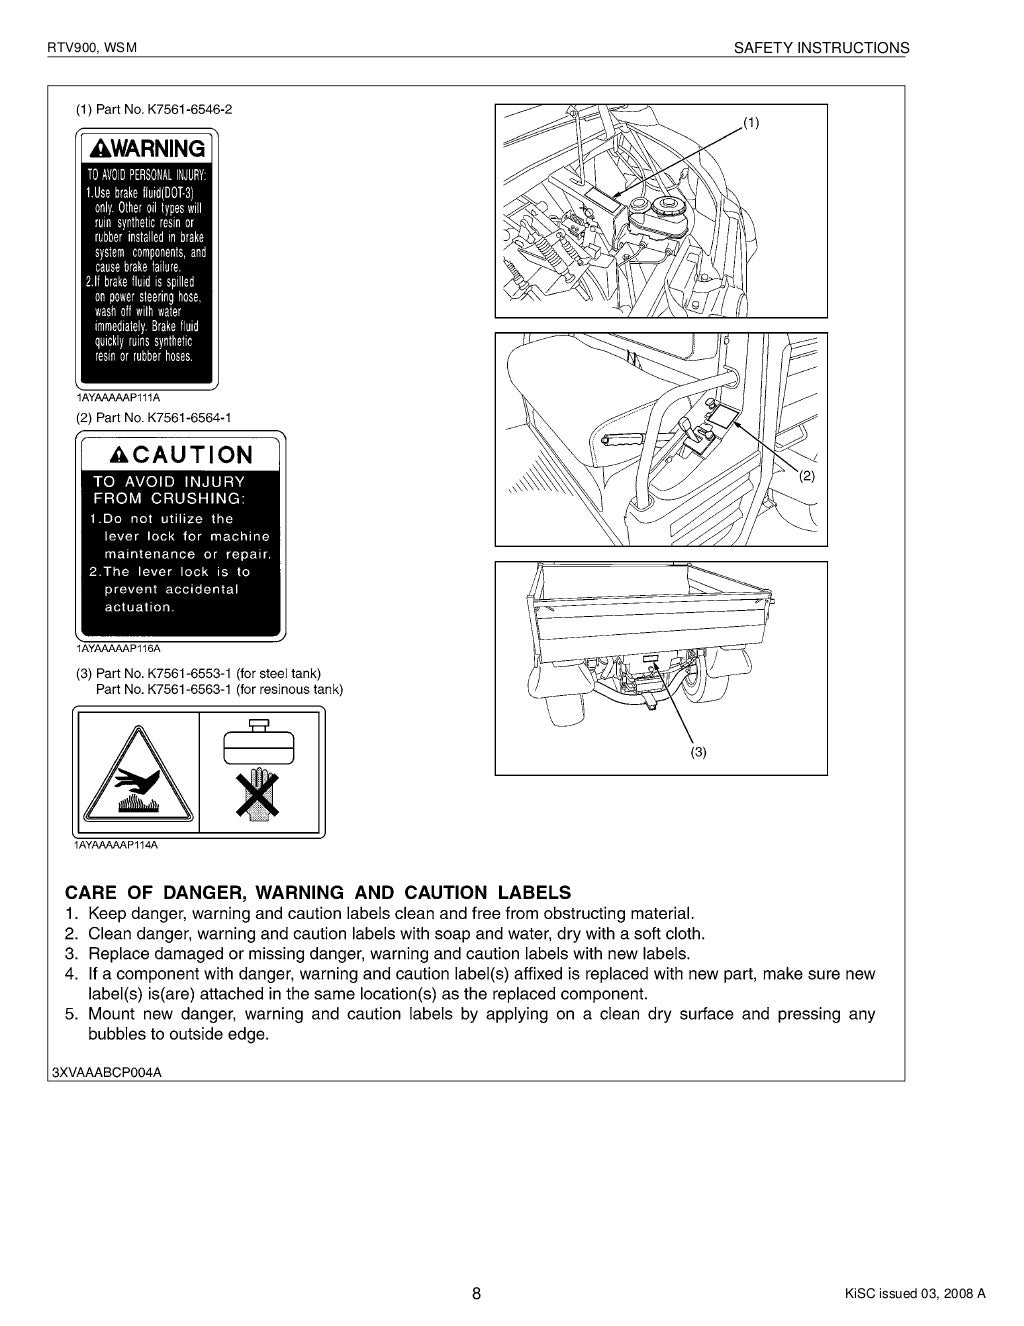 kubota rtv 900 service manual pdf download